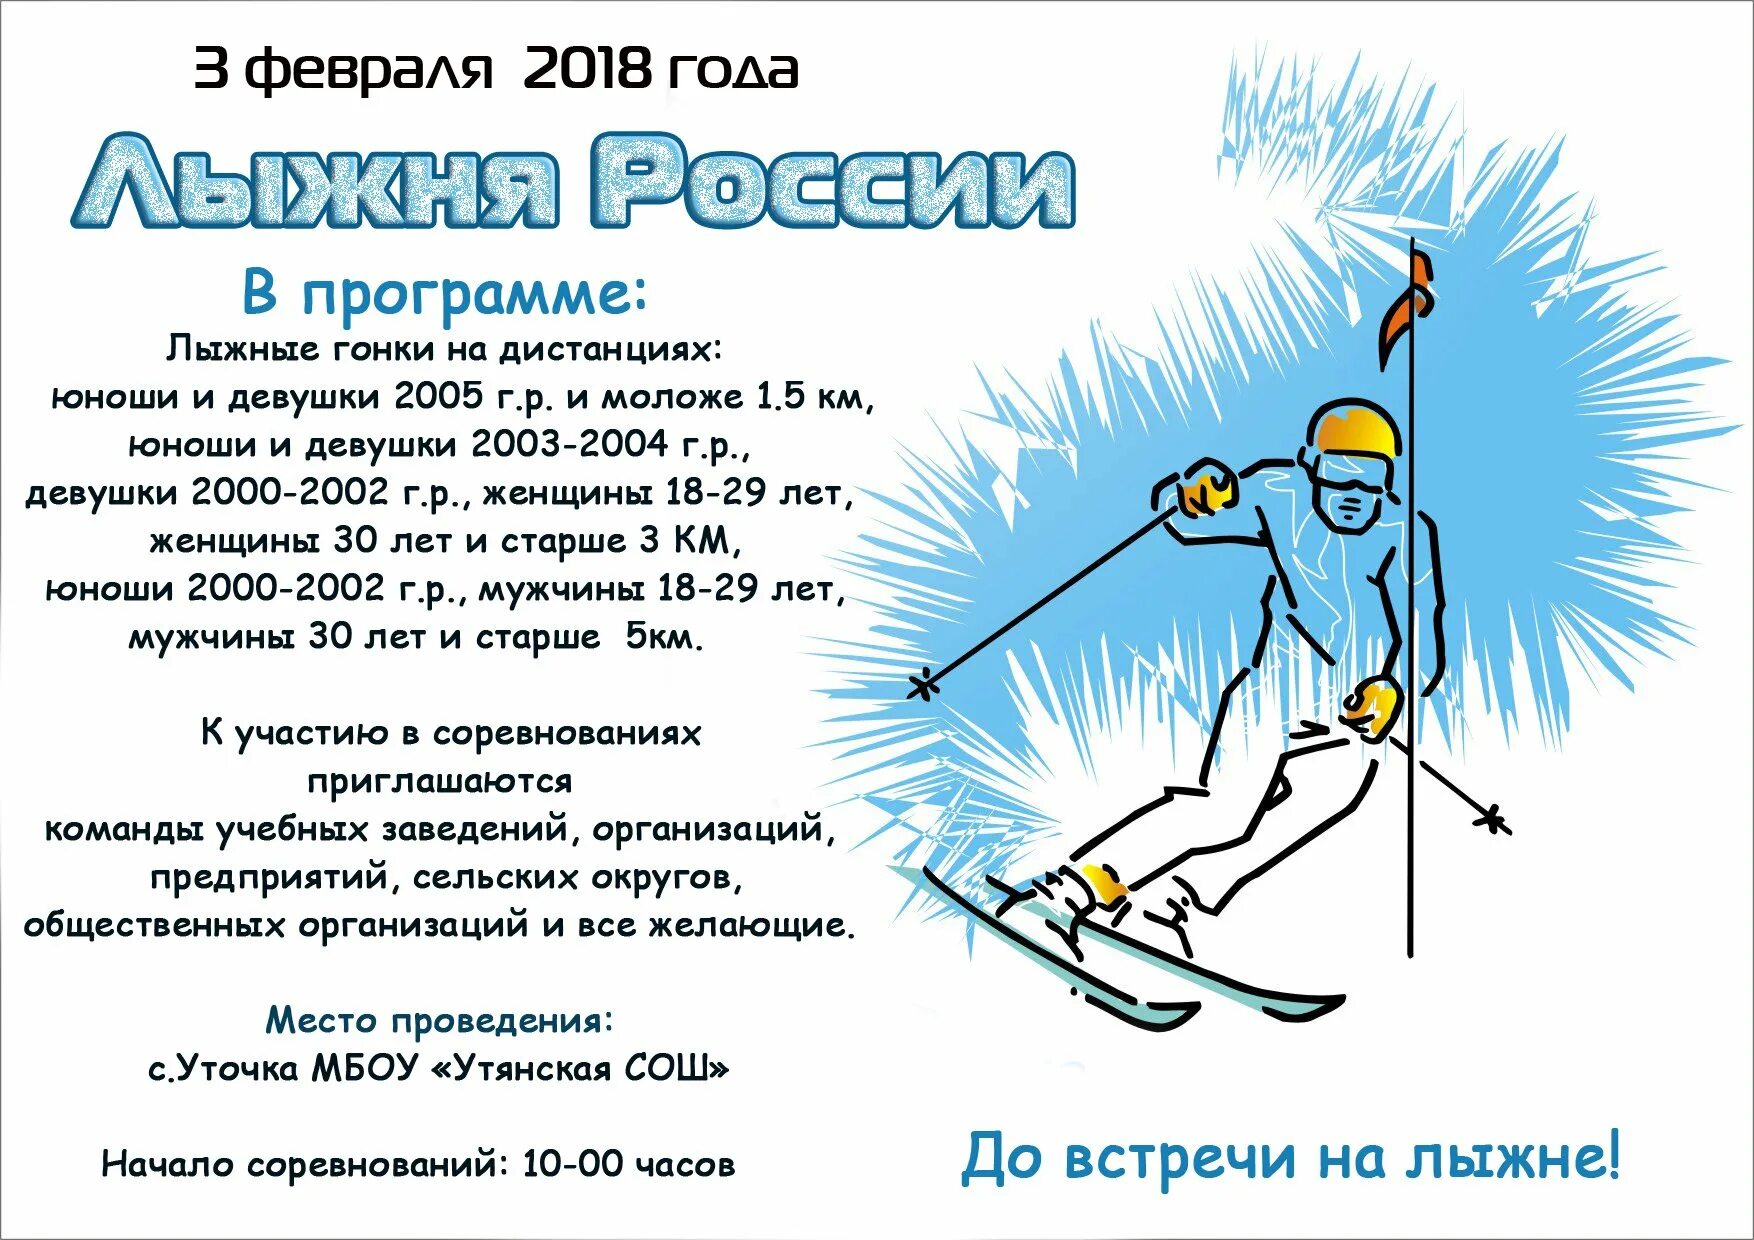 Приглашение на лыжню. Объявление о проведении лыжной гонки на лыжах. Объявление соревнования по лыжным гонкам. Программа лыжные гонки. Skiing приложение